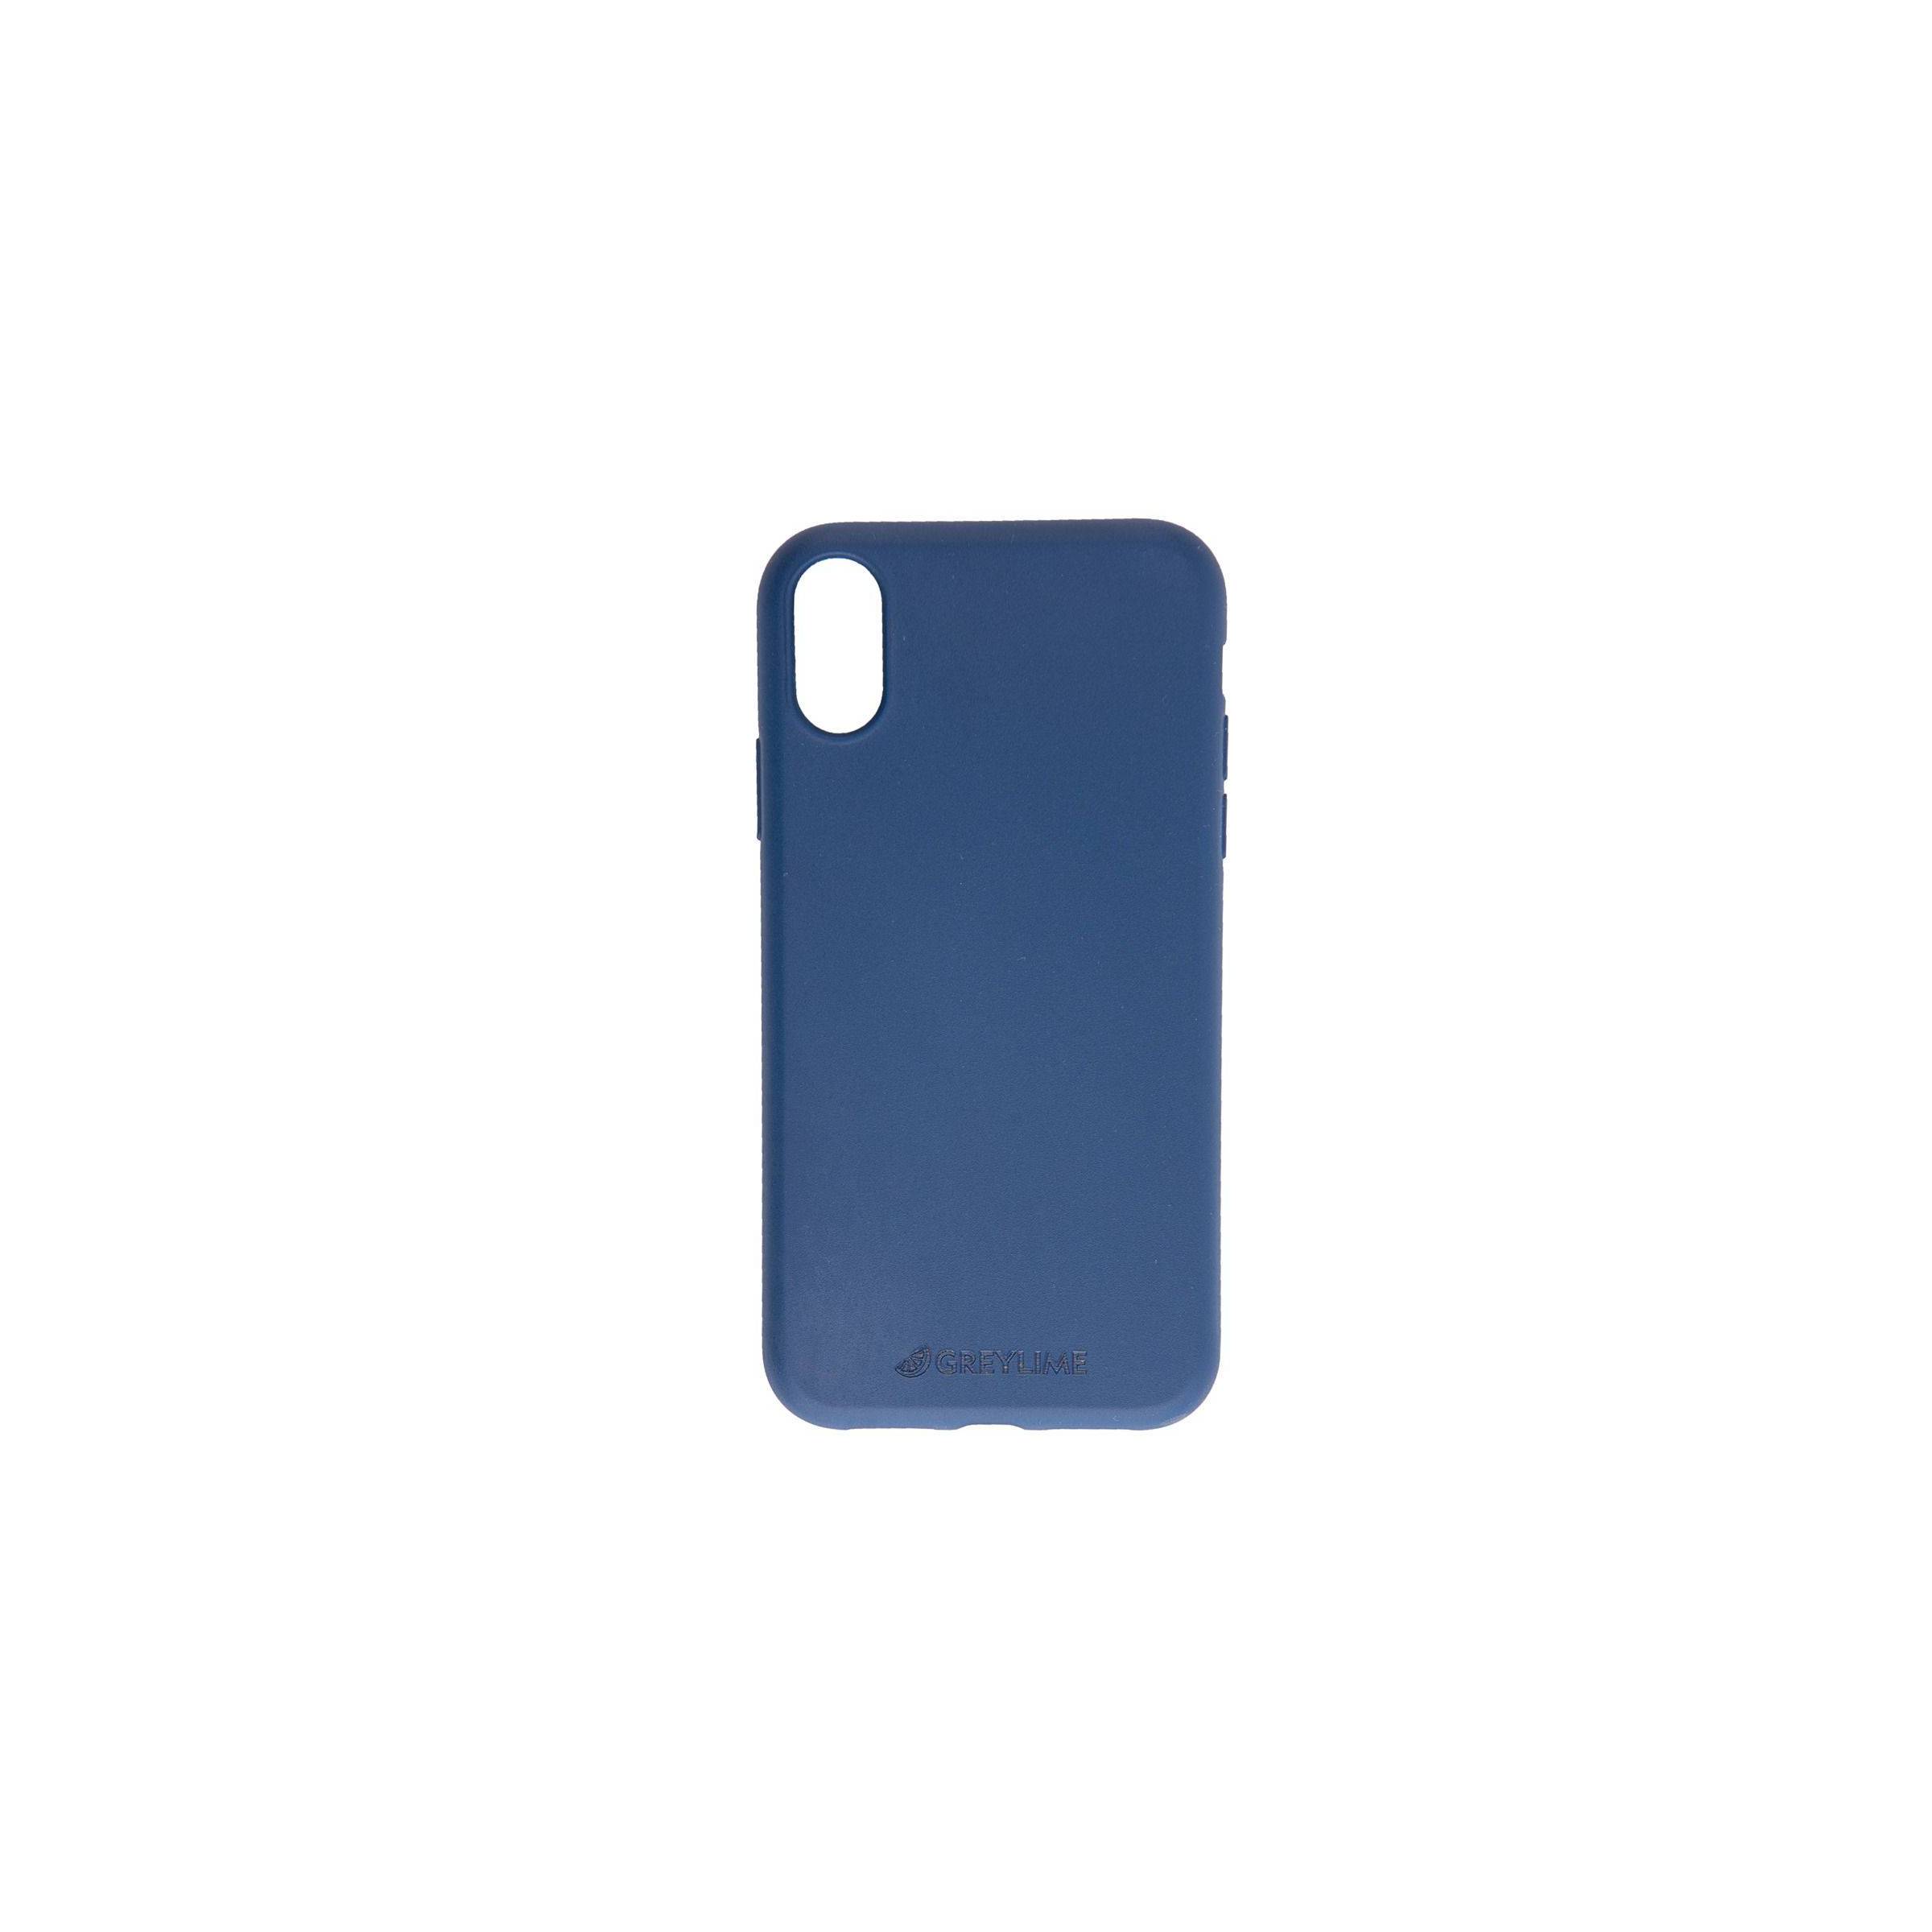 Bilde av Iphone Xr Biodegradable Cover Greylime, Farge Mørke Blå